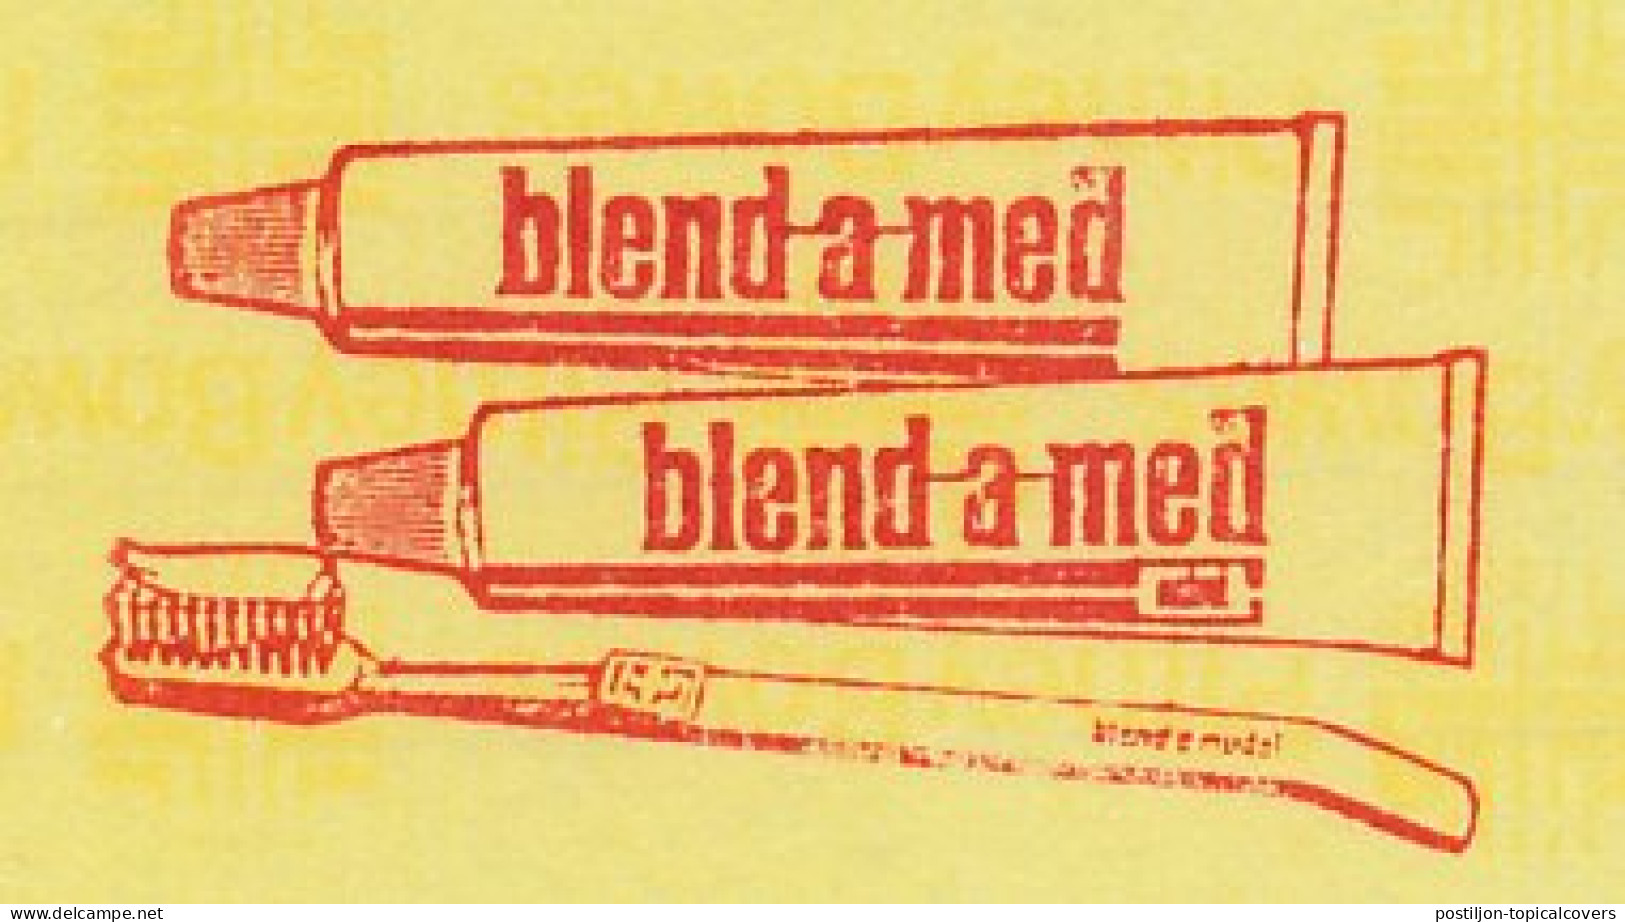 Meter Proof / Test Strip Netherlands 1982 Toothpaste - Toothbrush - Blend A Med - Medicina